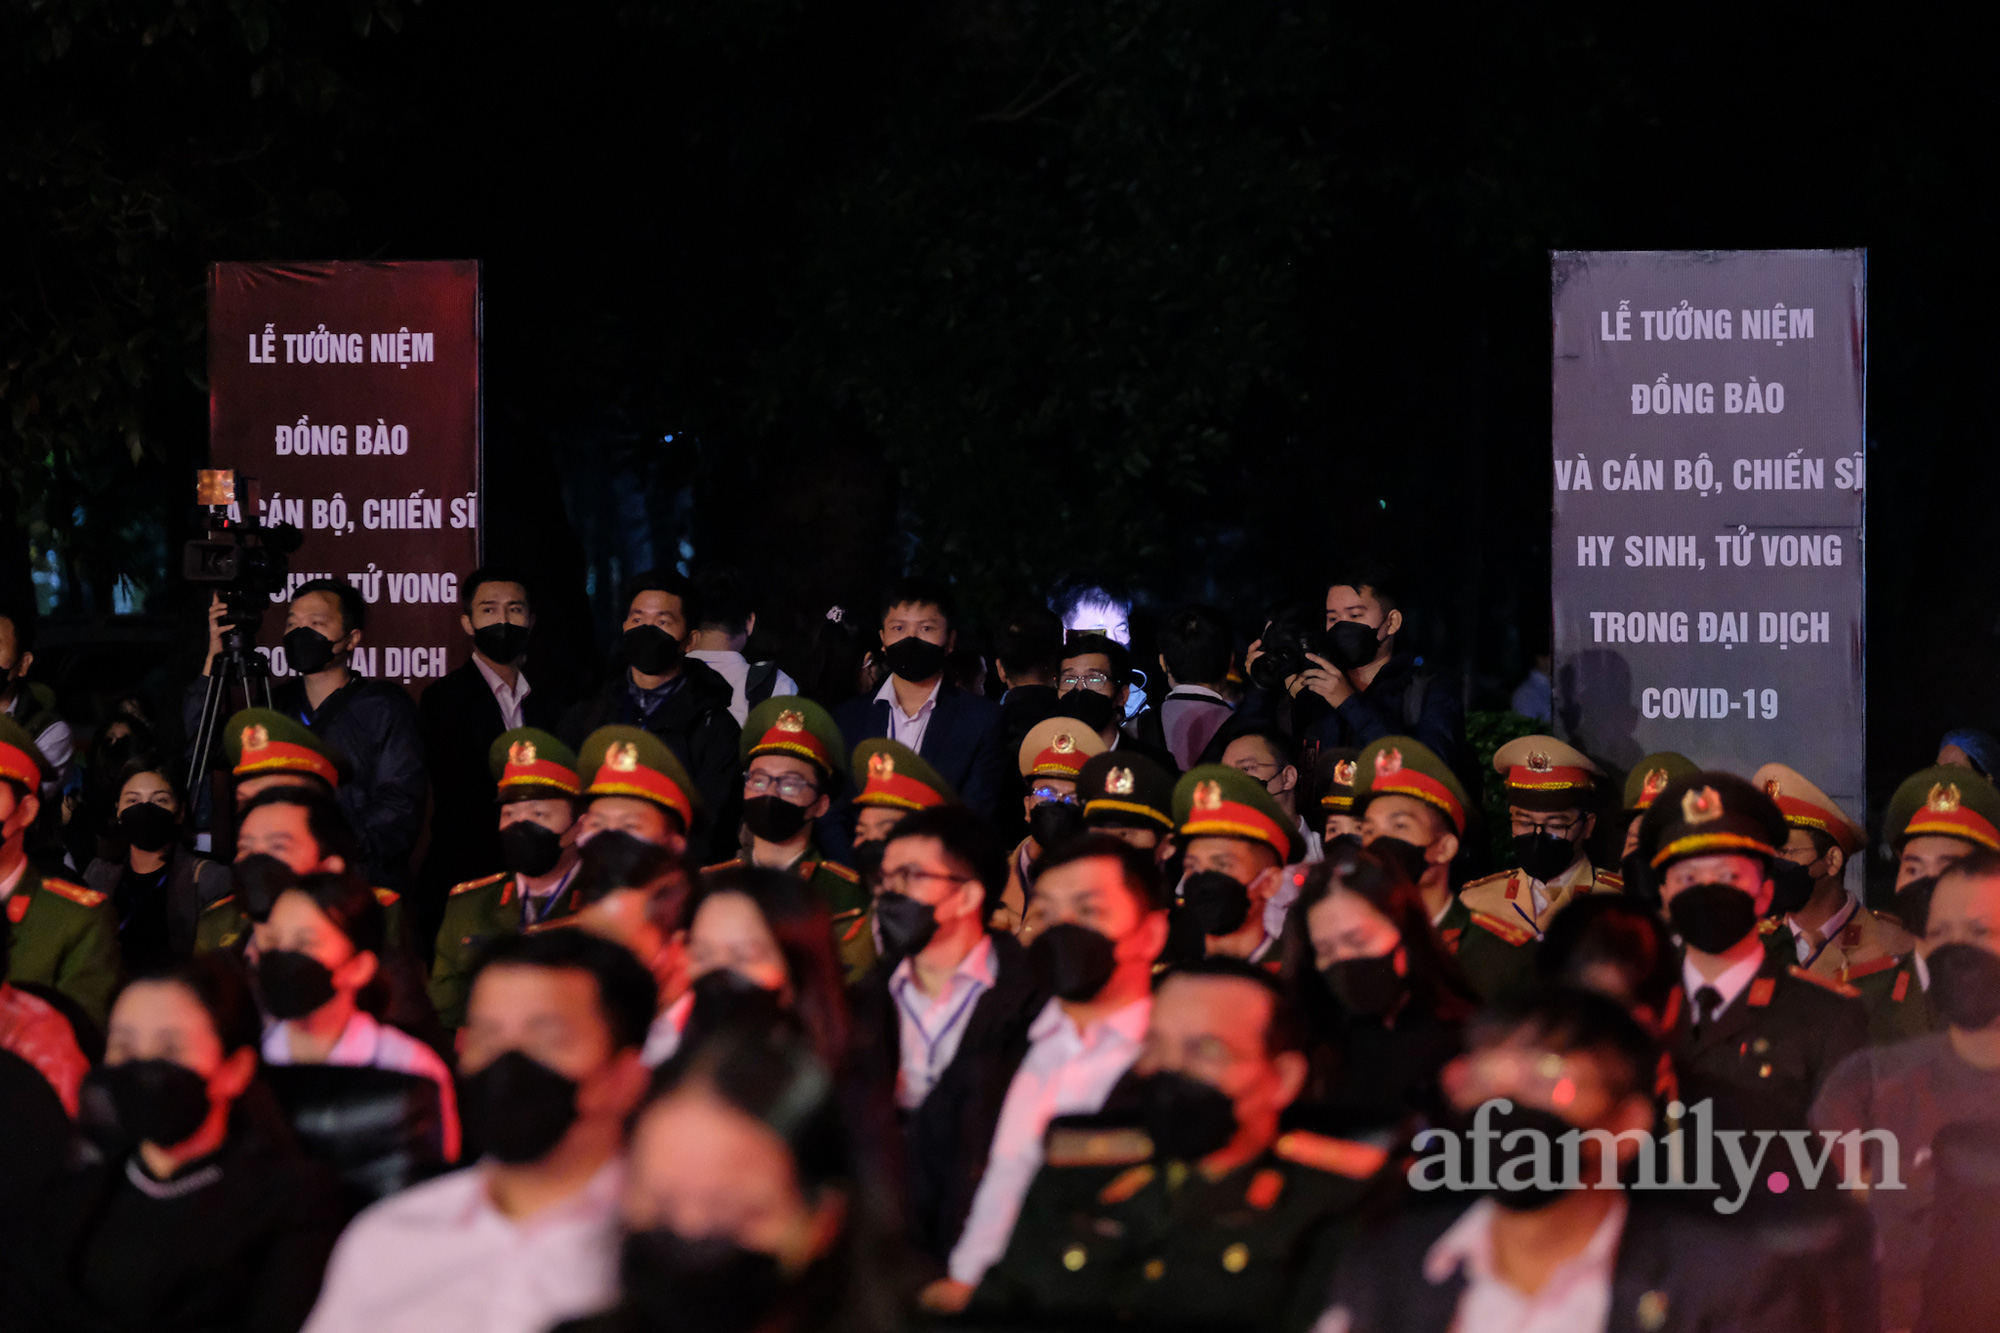 Lễ tưởng niệm 23.476 đồng bào mất vì COVID-19: Lãnh đạo Đảng, Nhà nước dâng hoa, thắp nến tưởng niệm tại Hà Nội - Ảnh 3.